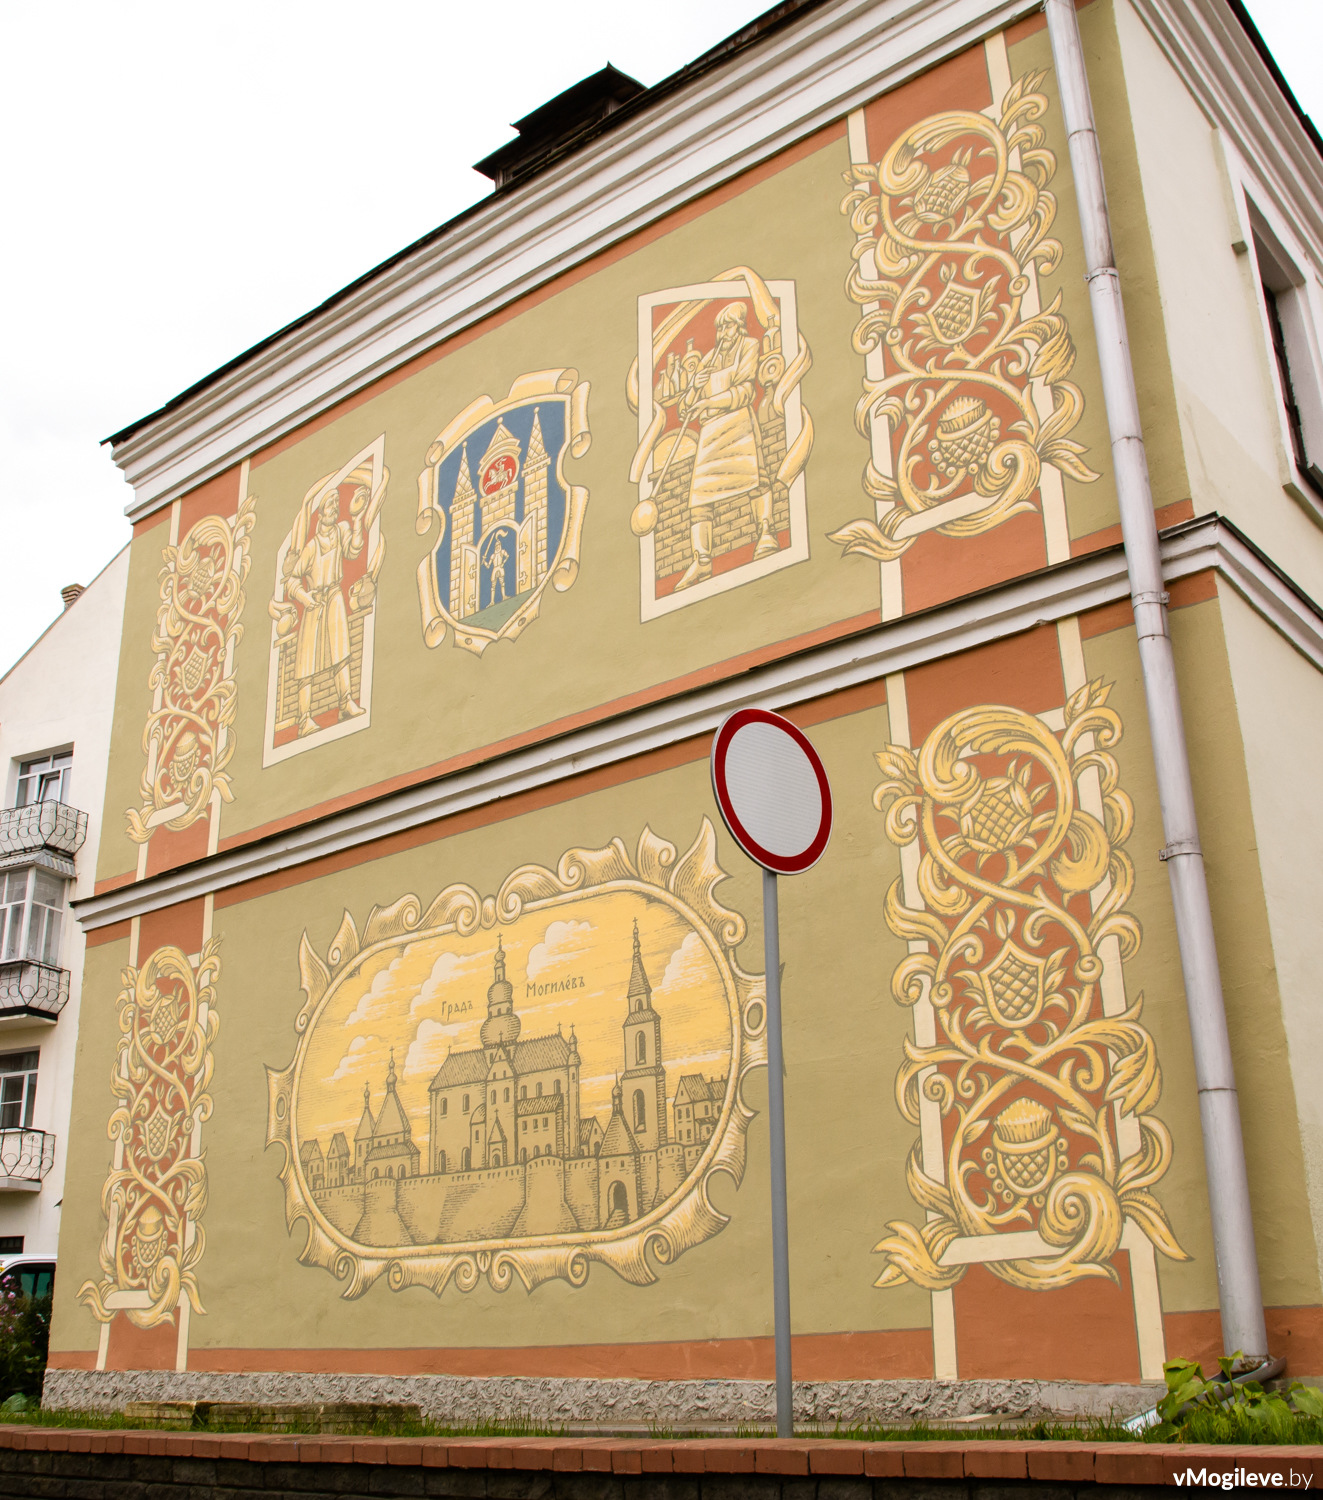 Художественная роспись стены во дворе Могилевской городской Ратуши была сделана художником Григорием Шараевым в июне 2017 года.